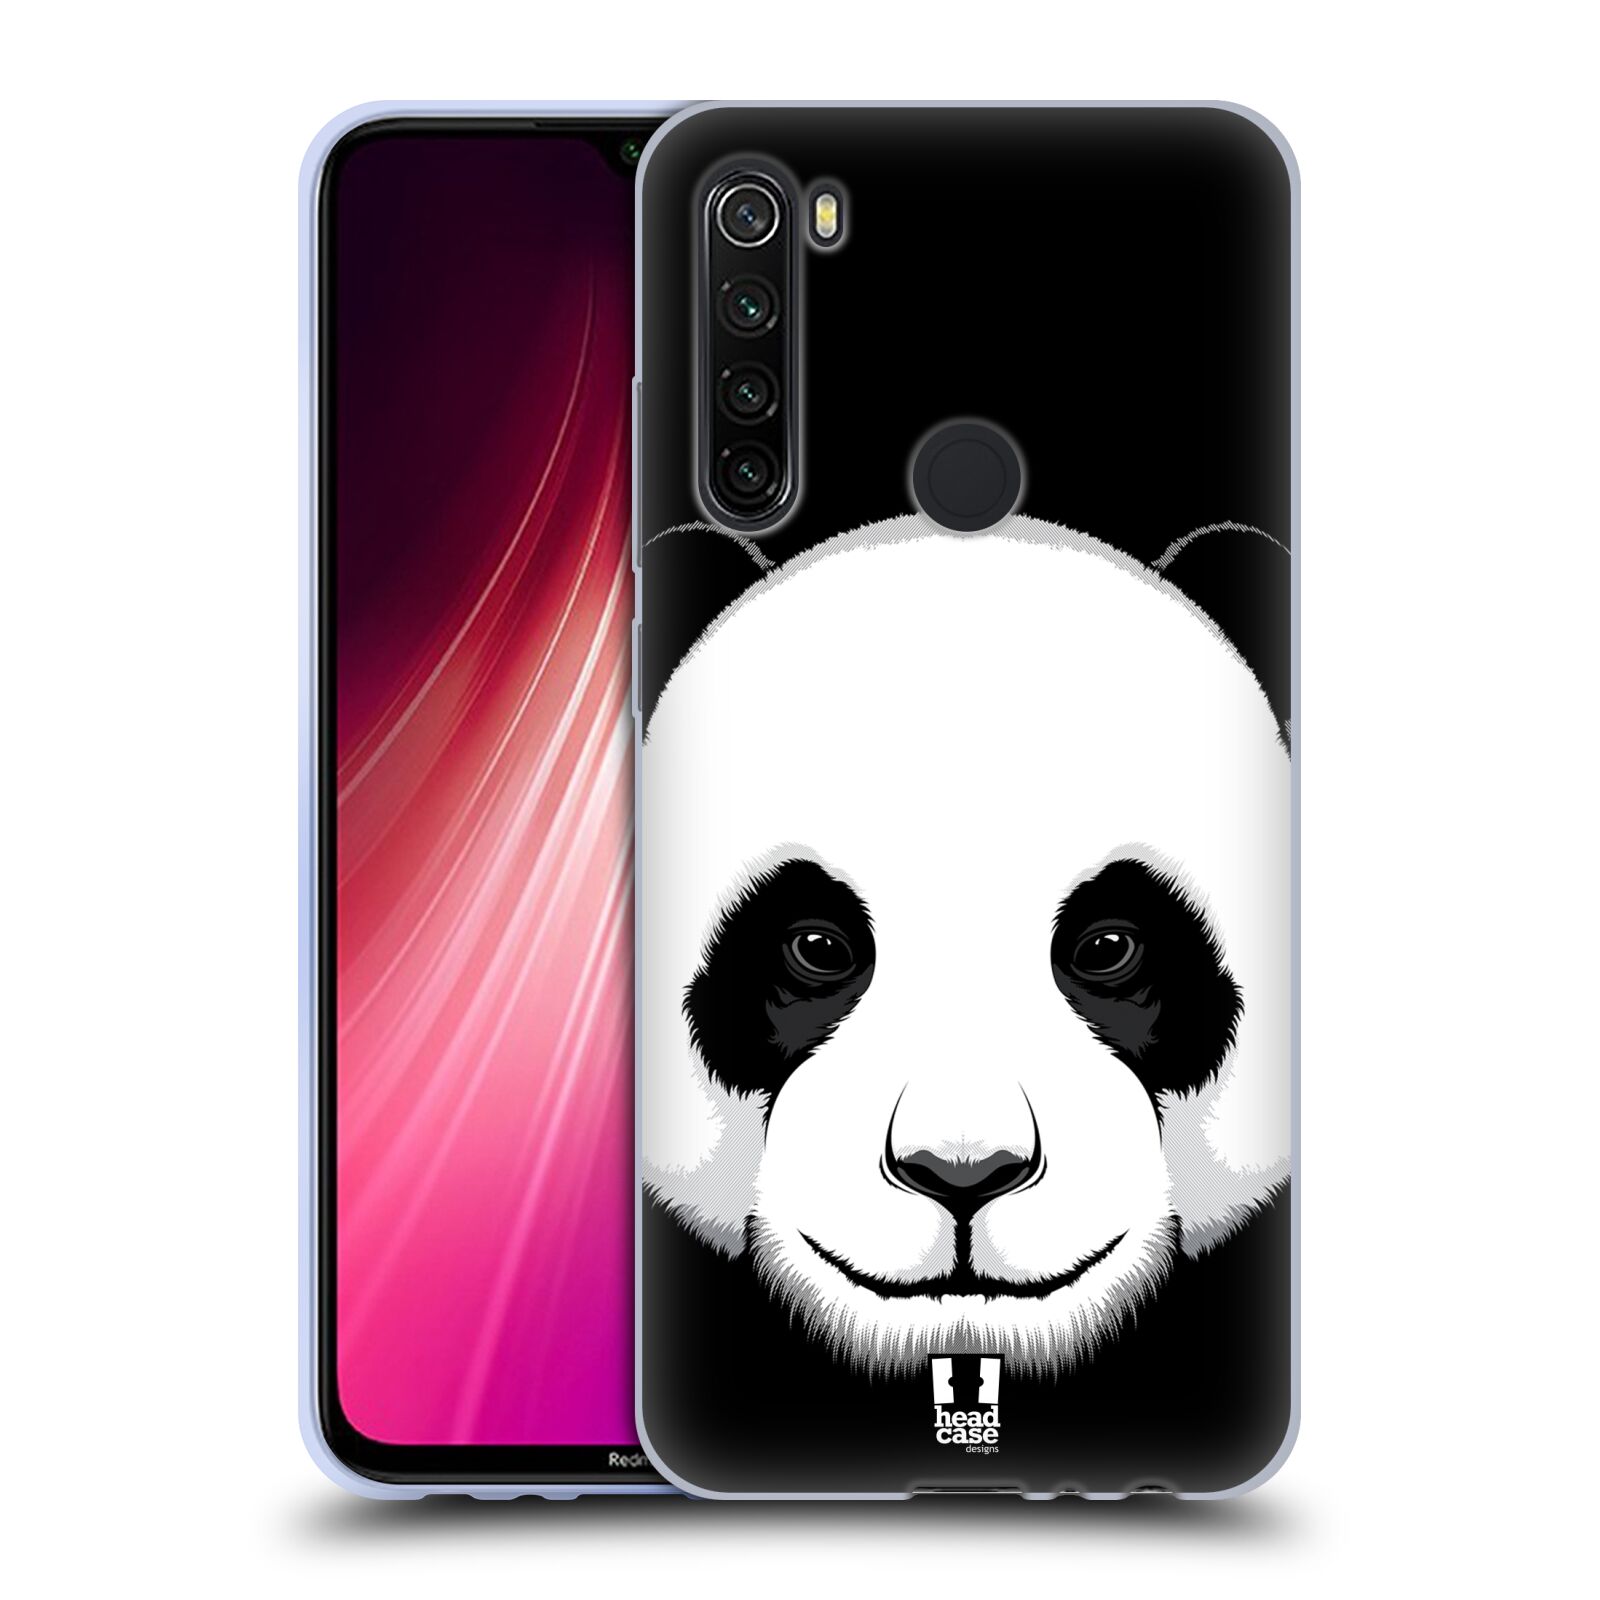 Plastový obal HEAD CASE na mobil Xiaomi Redmi Note 8T vzor Zvíře kreslená tvář panda